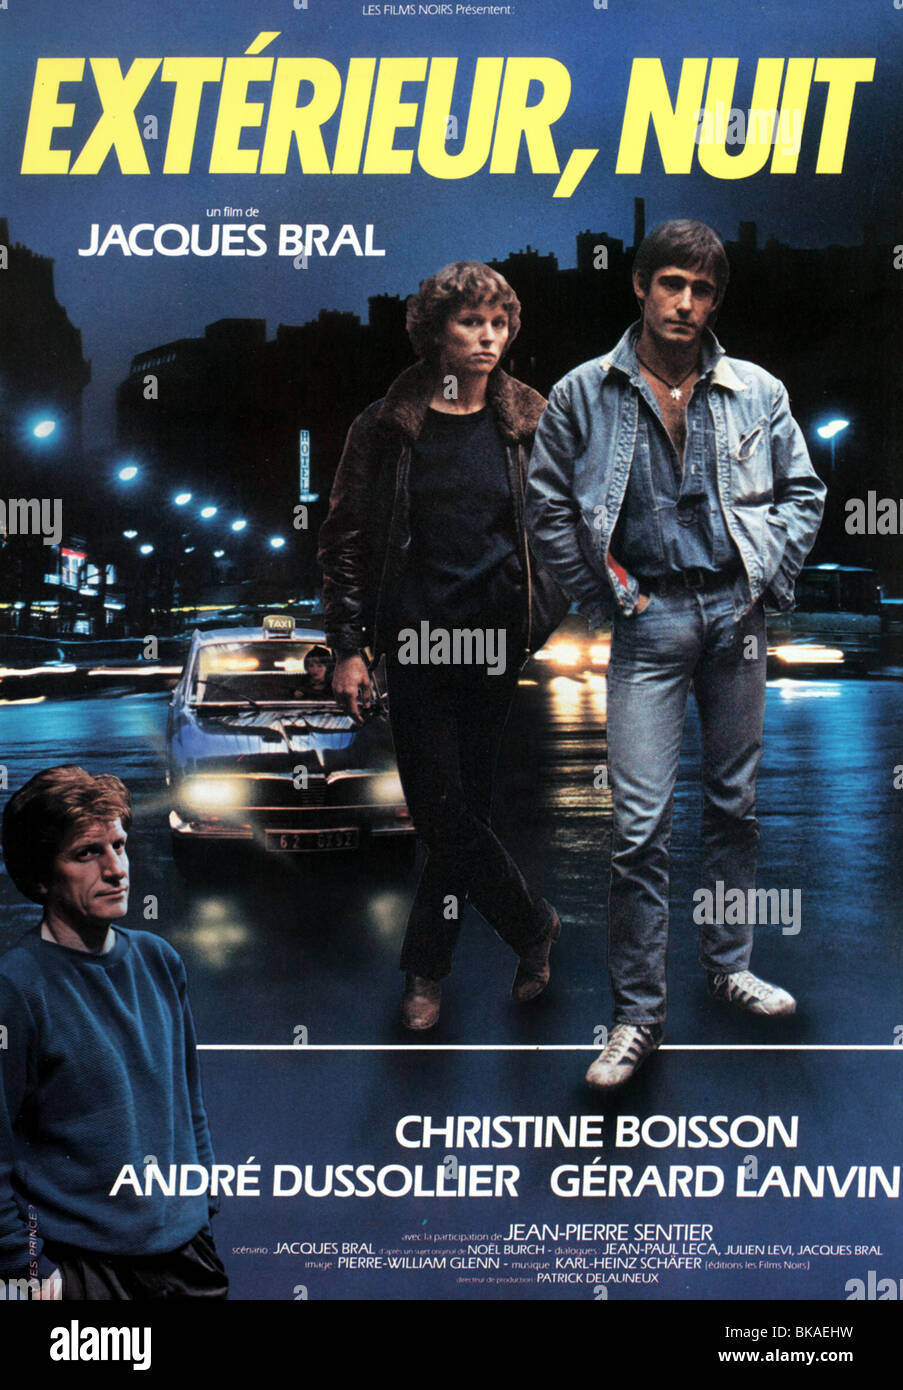 Extérieur, nuit Year :1980 - France Director :Jacques Bral André Dussollier, Christine Boisson, Gérard Lanvin Movie poster (Fr) Stock Photo